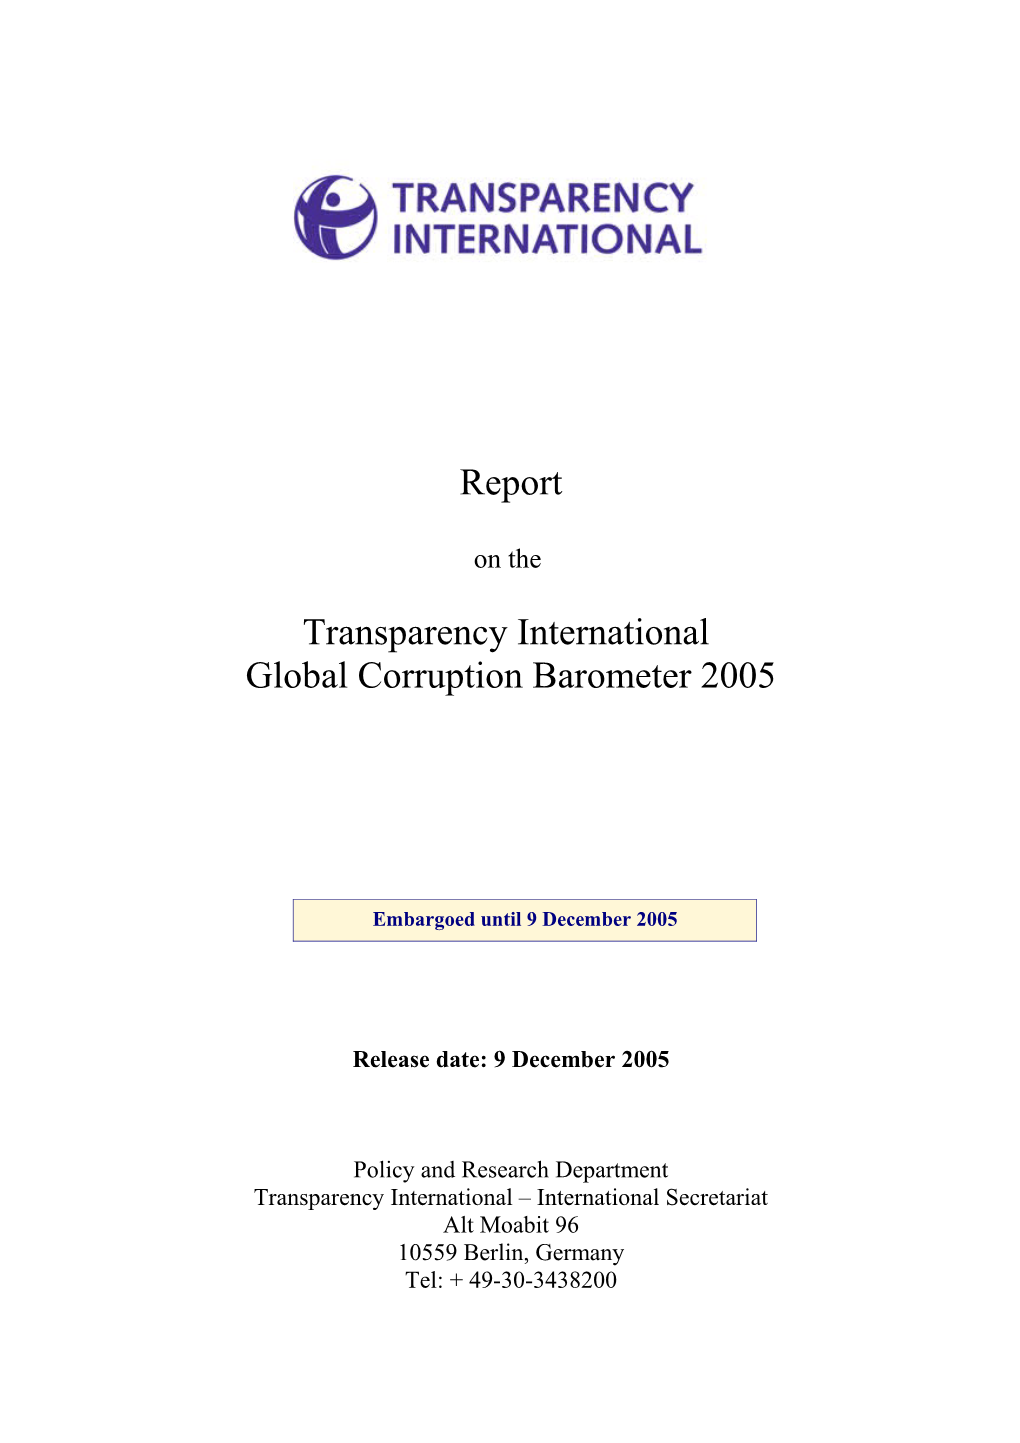 Global Corruption Barometer 2005